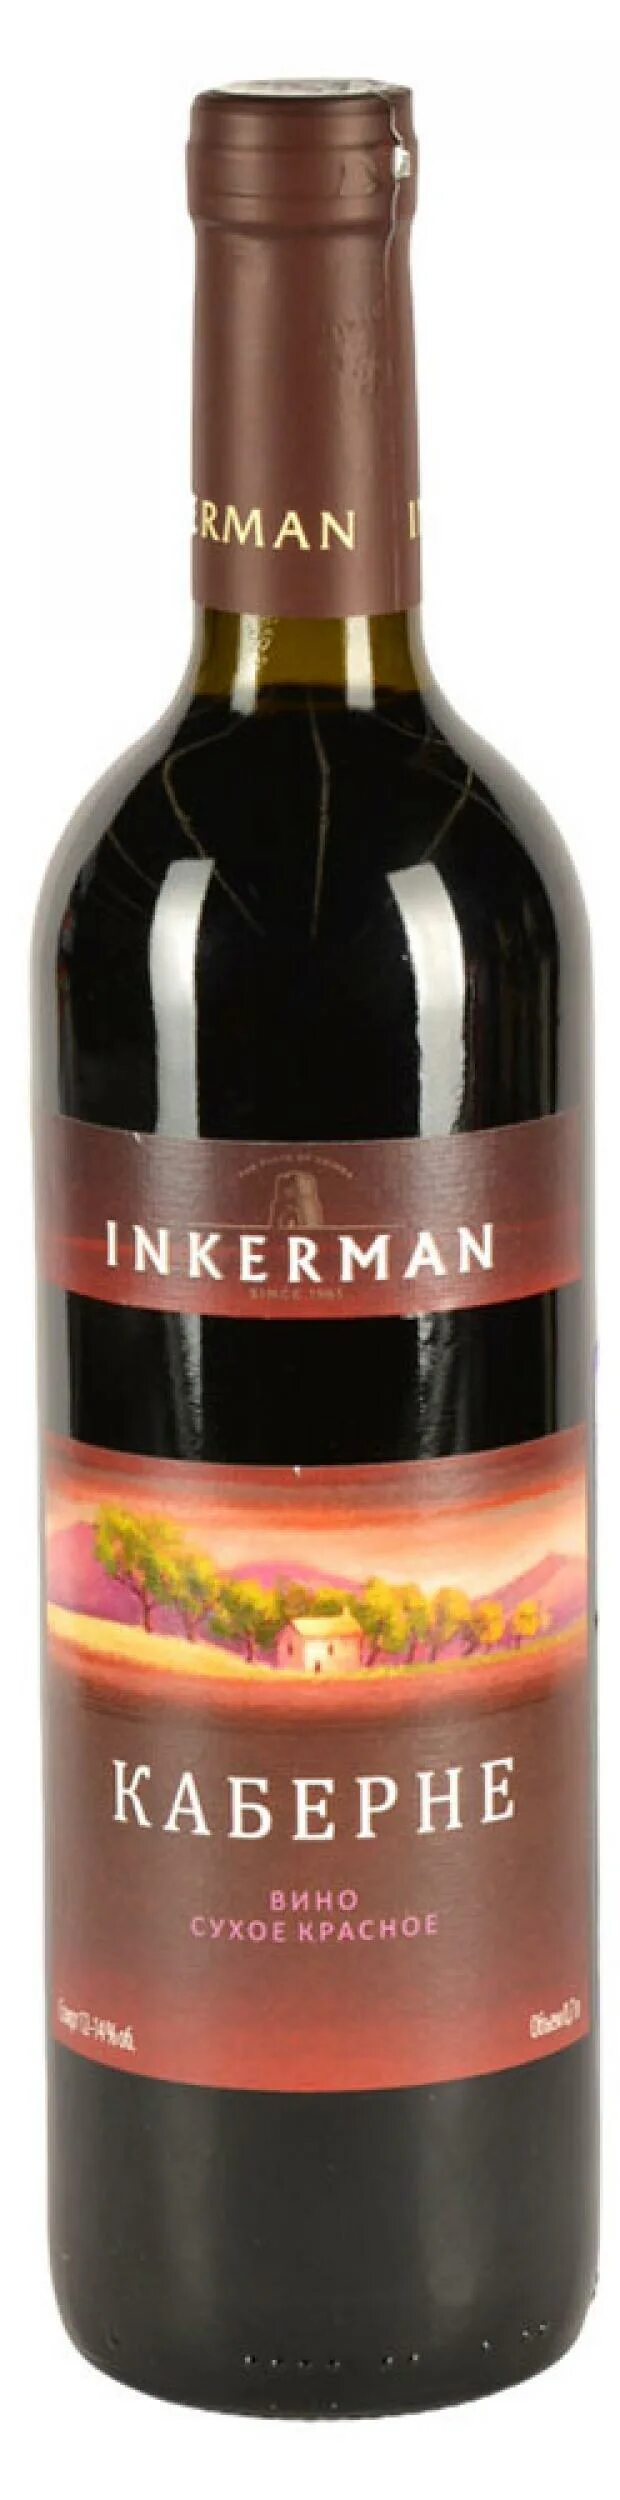 Вино Inkerman Пинно красное полусладкое. Inkerman вино Шато Руж. Вино Шато Руж Инкерман полусухое. Инкерман Шато Руж столовое полусухое красное. Каберне инкерман сухое